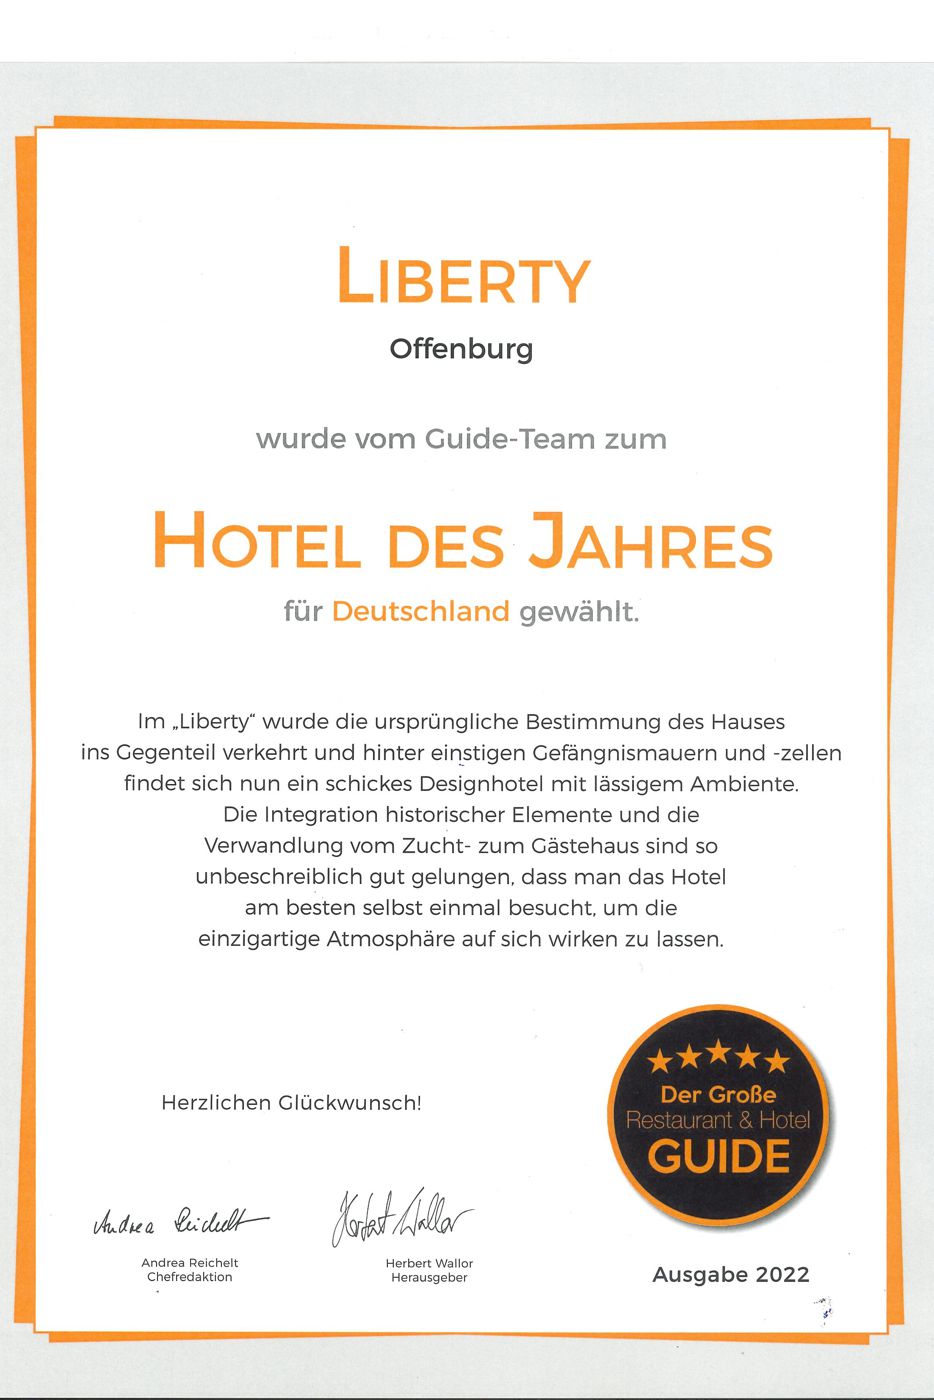 Location mit Auszeichnung: Der Große Restaurant & Hotel Guide hat das Hotel Liberty im Jahr 2022 zum Hotel des Jahres für Deutschland gewählt.